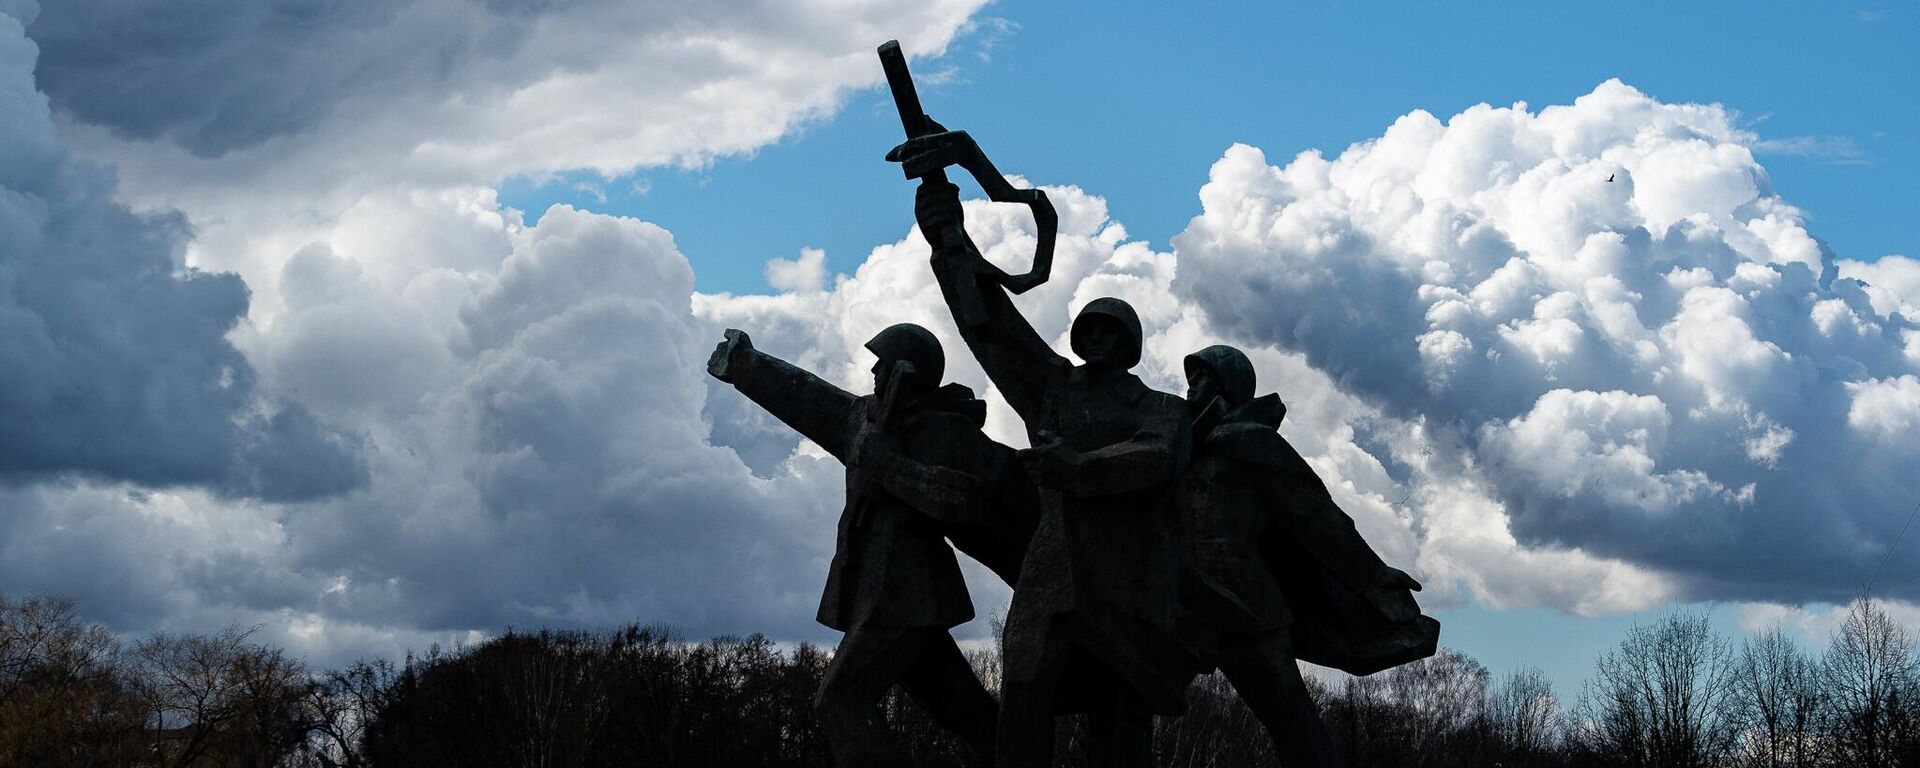 11 апреля мэр Риги принял решение оградить территорию памятника Освободителям Риги в Пардаугаве - Sputnik Латвия, 1920, 30.04.2022